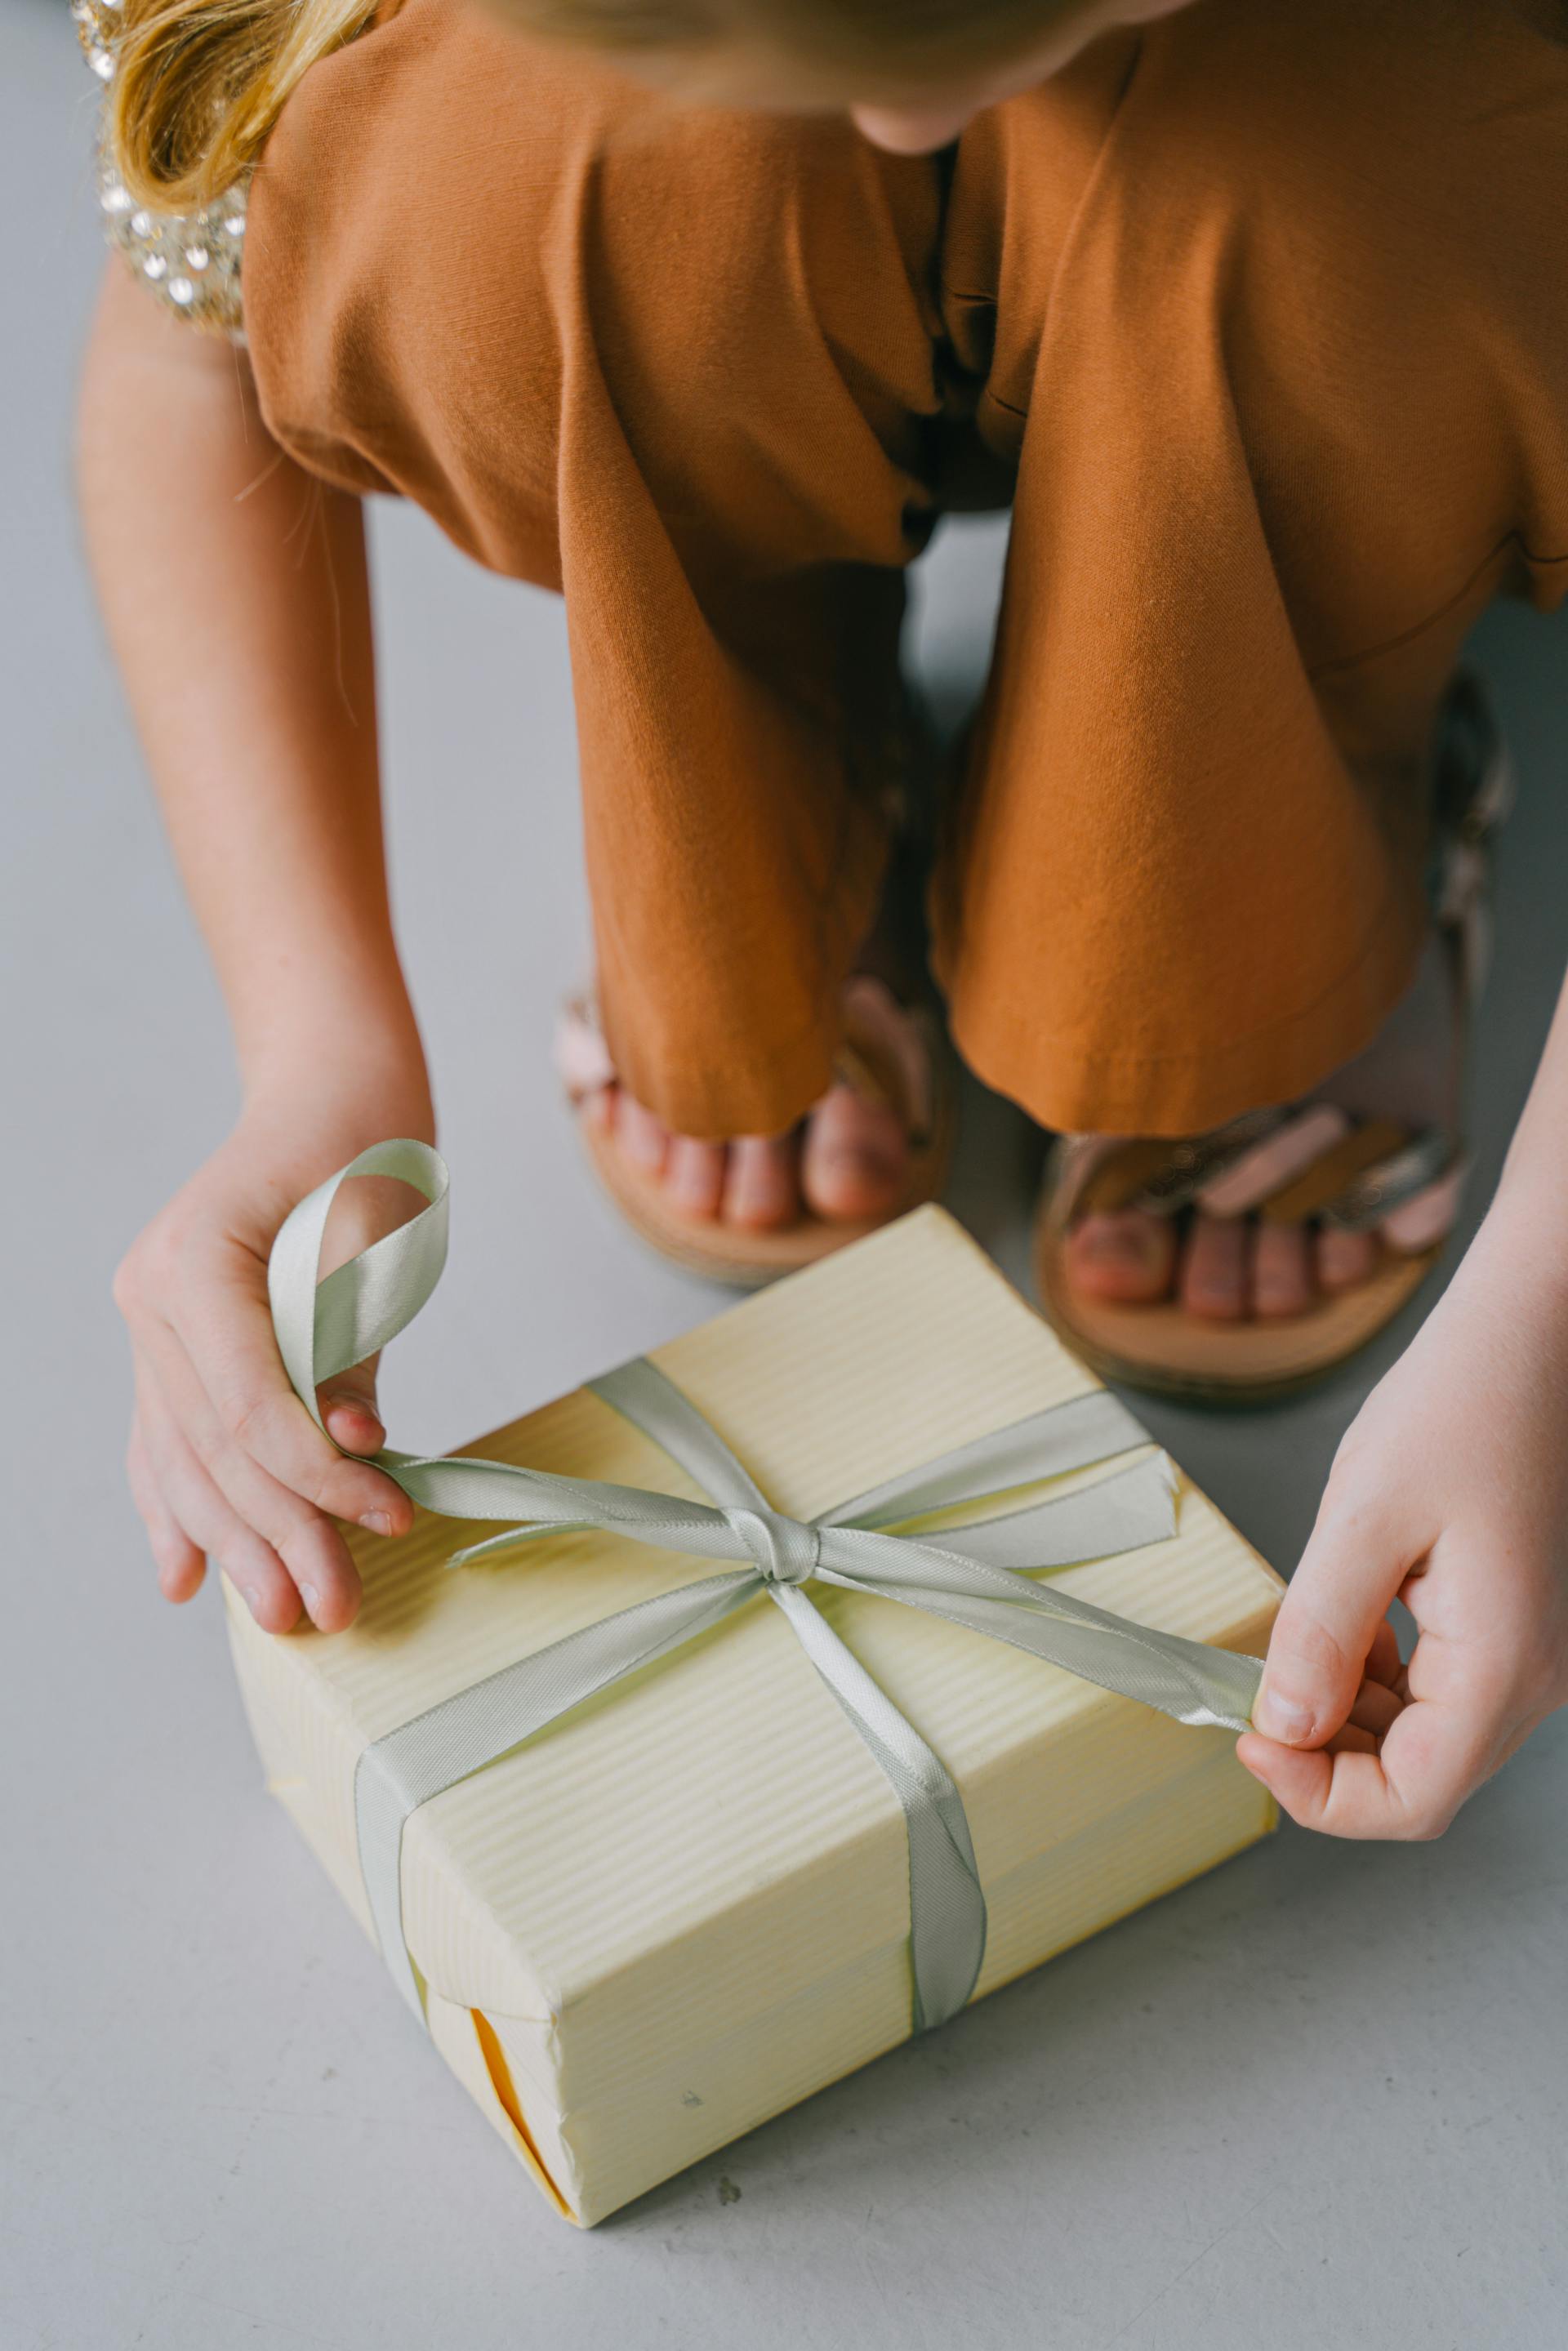 Eine Frau bindet die Schleife an einem Geschenkkarton | Quelle: Pexels